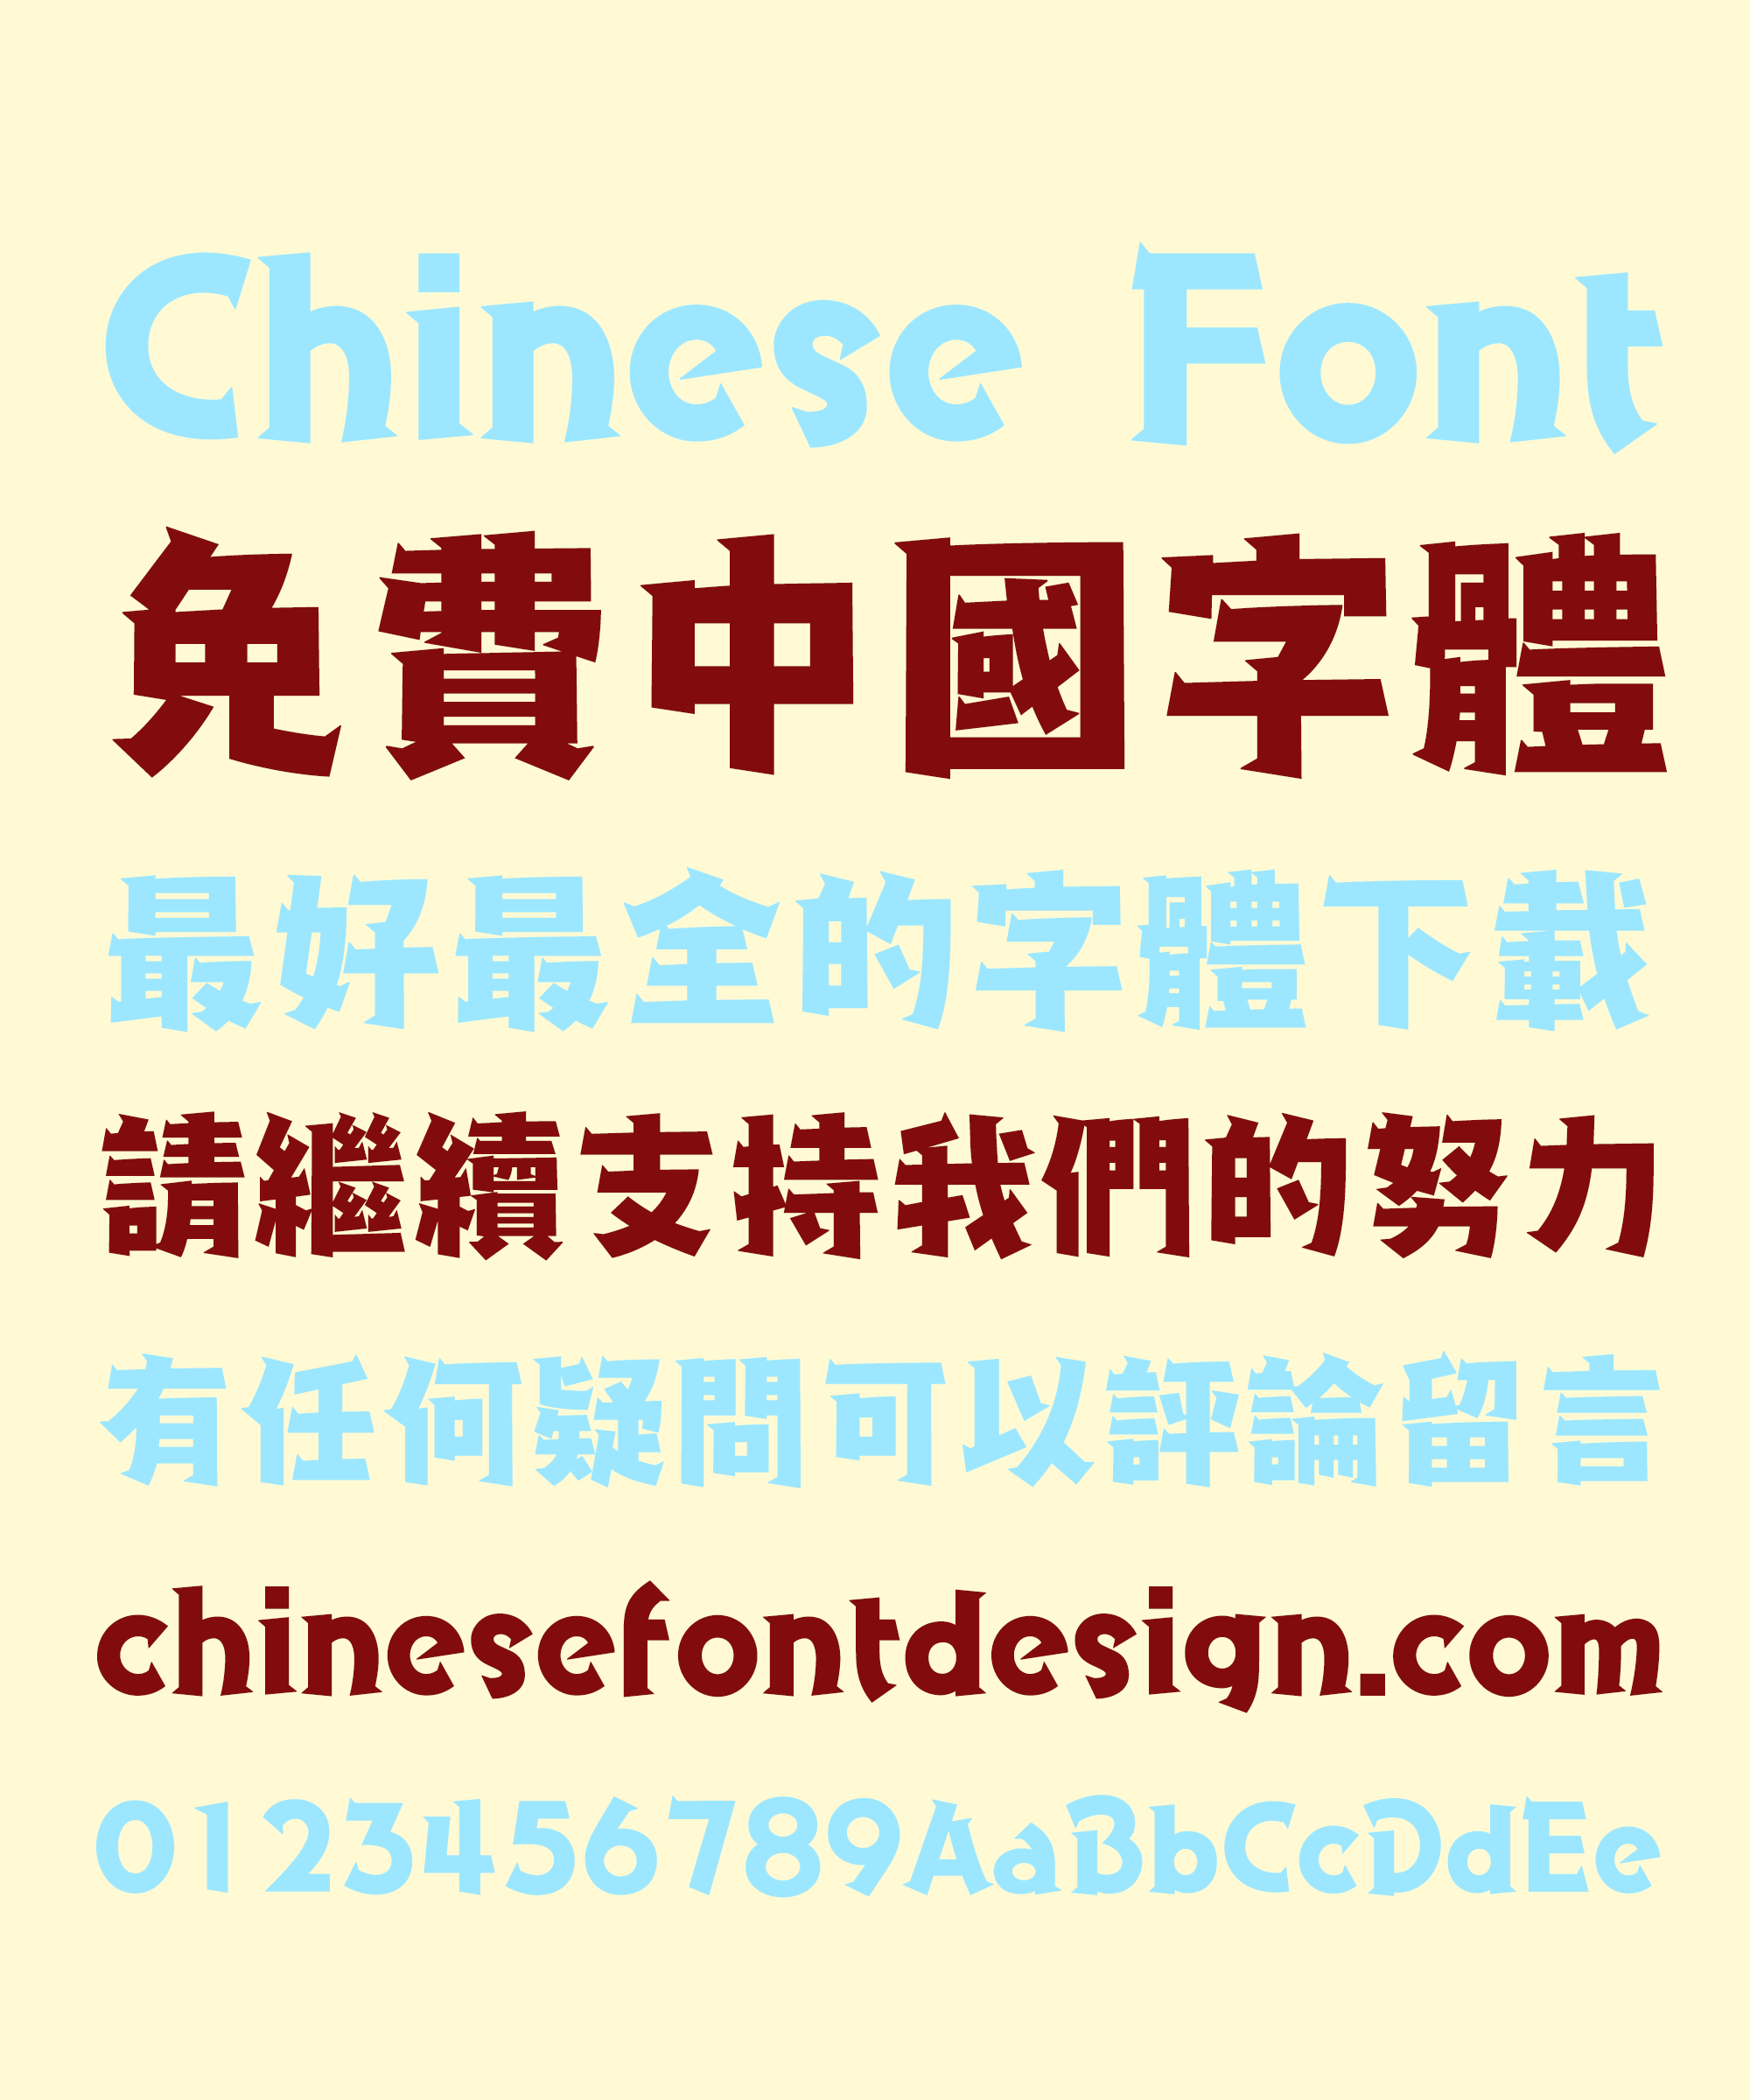 download font mirip huruf china